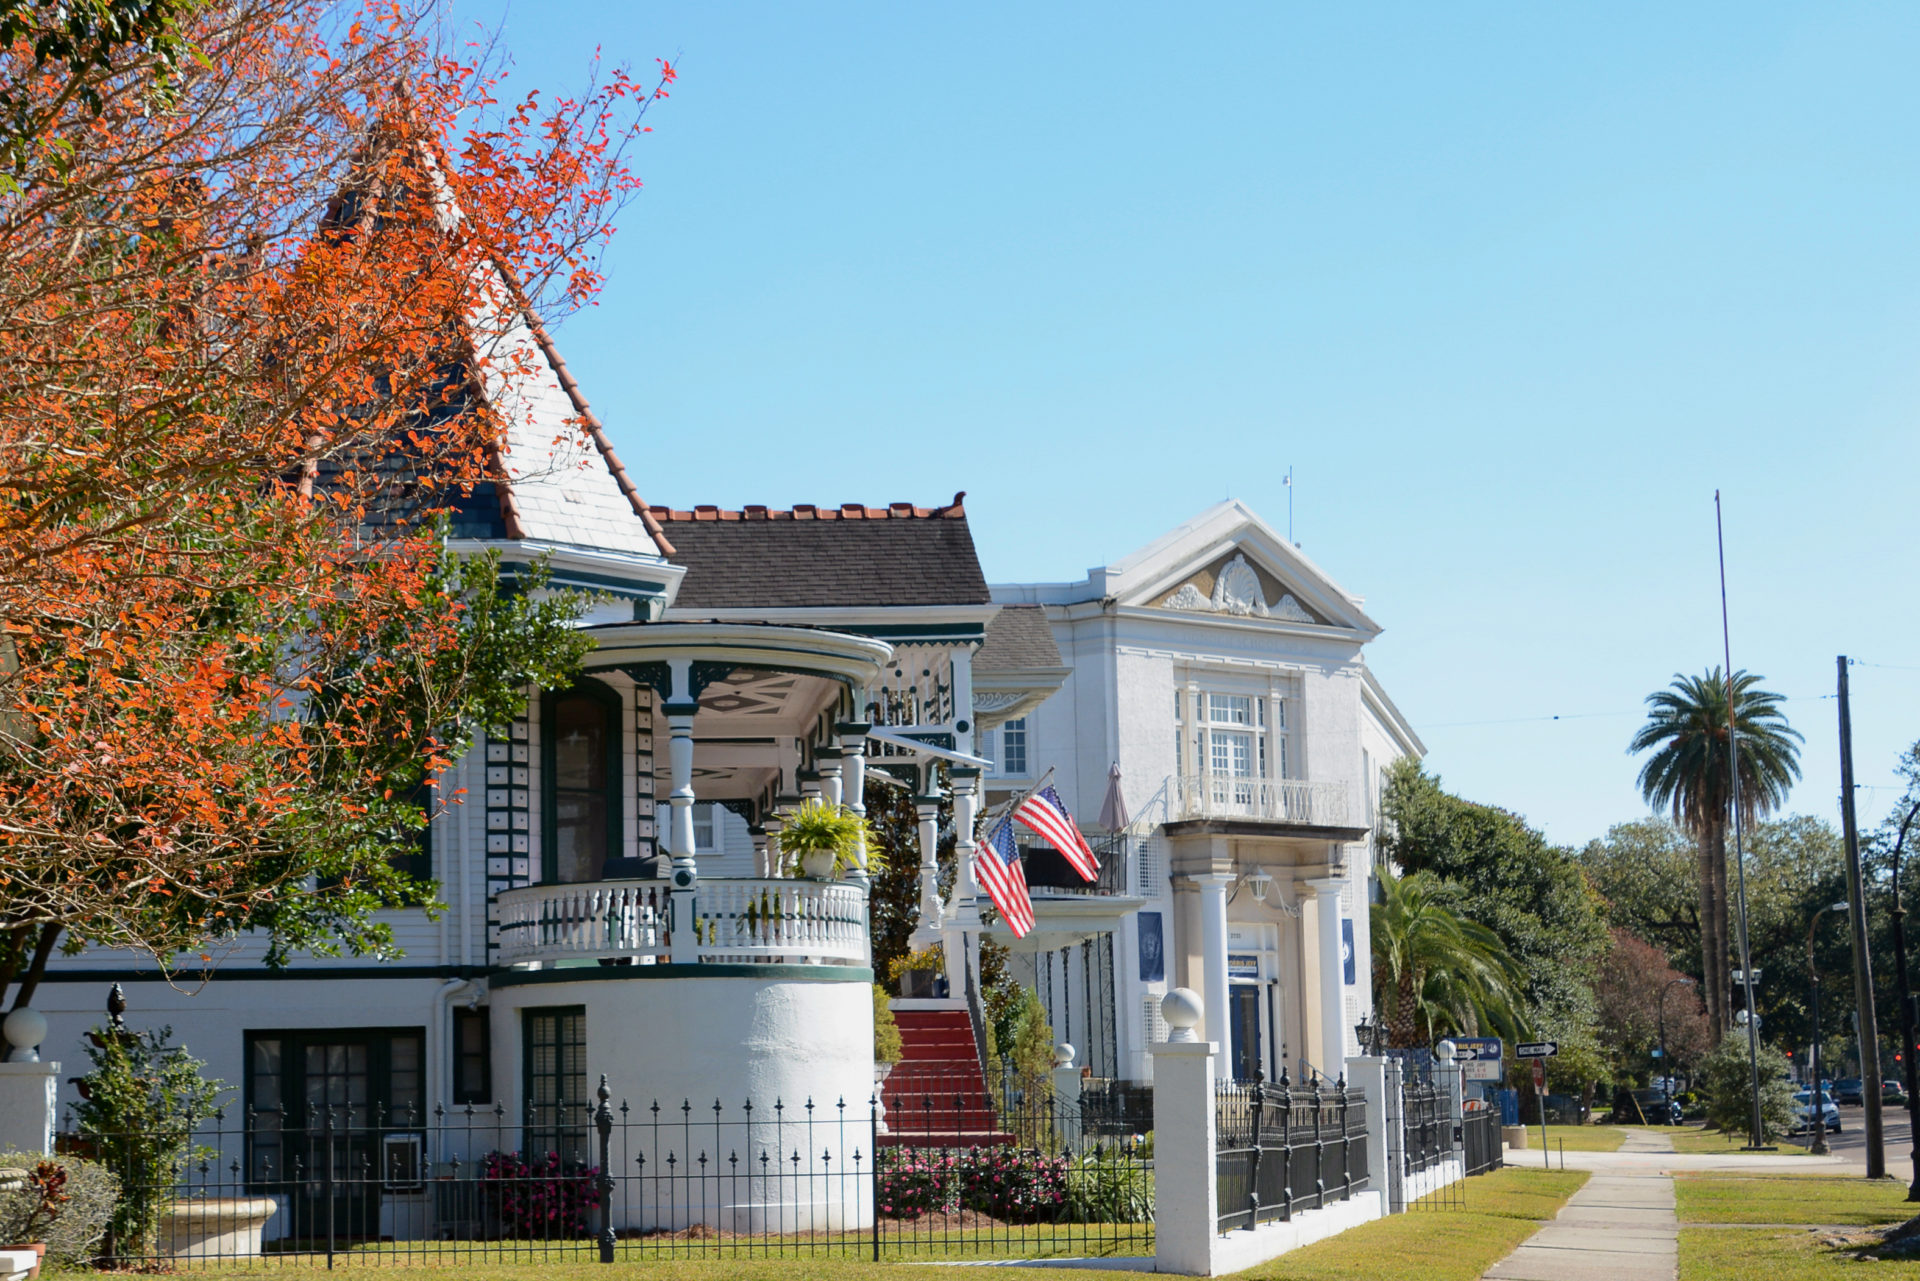 Villa mit Türmchen in Nordosten der Innenstadt von New Orleans